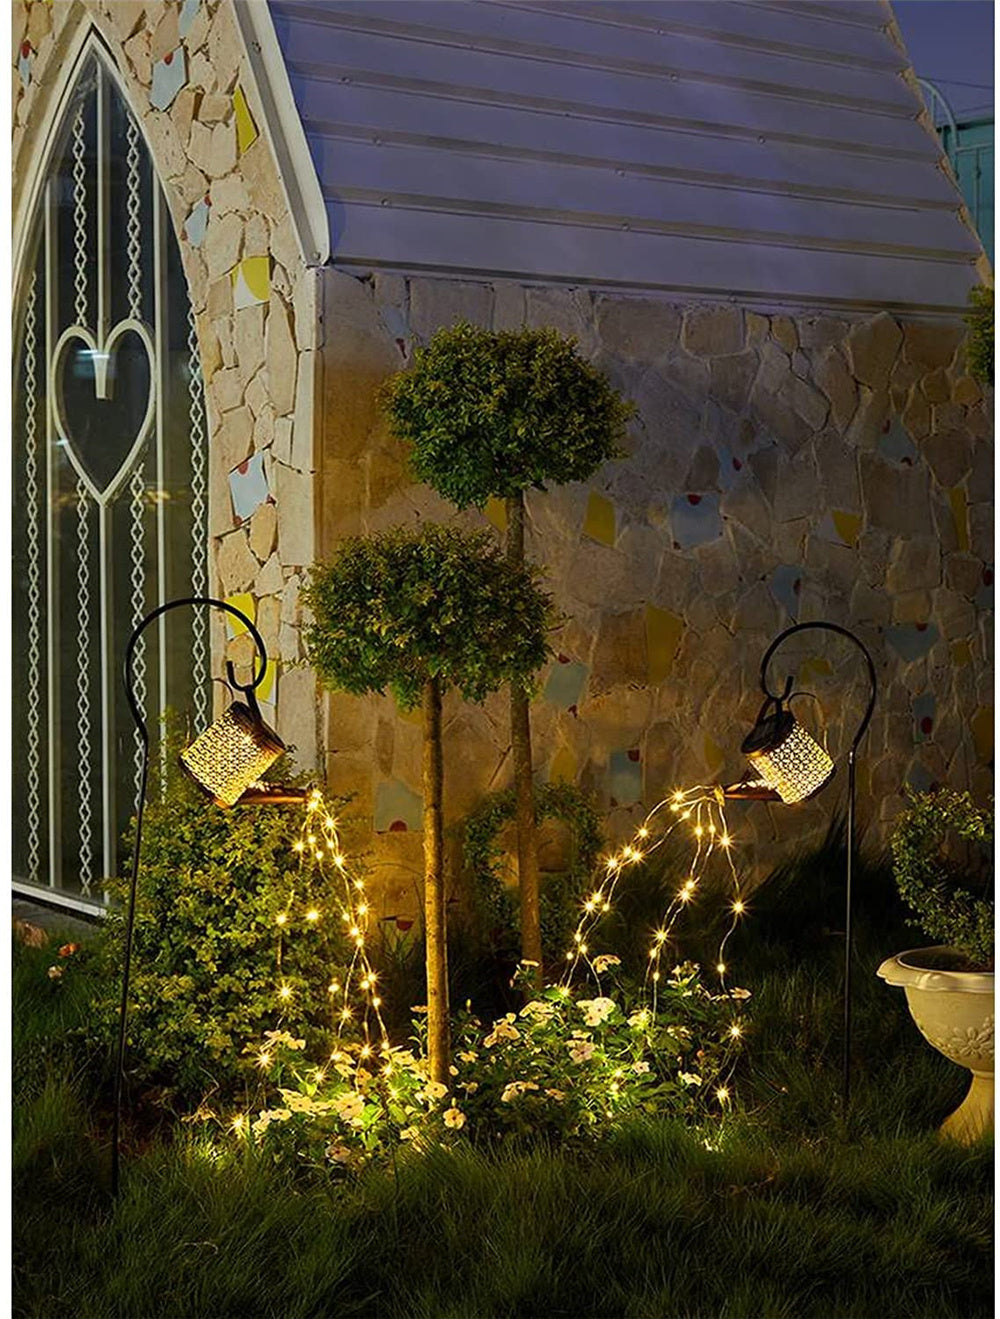 ARROSOIR EN GUIRLANDE SOLAIRE LED - Premium lampe solaire jardin puissante from Ma-déco-Jardin - Just $29.90! Shop now at Ma deco Jardin